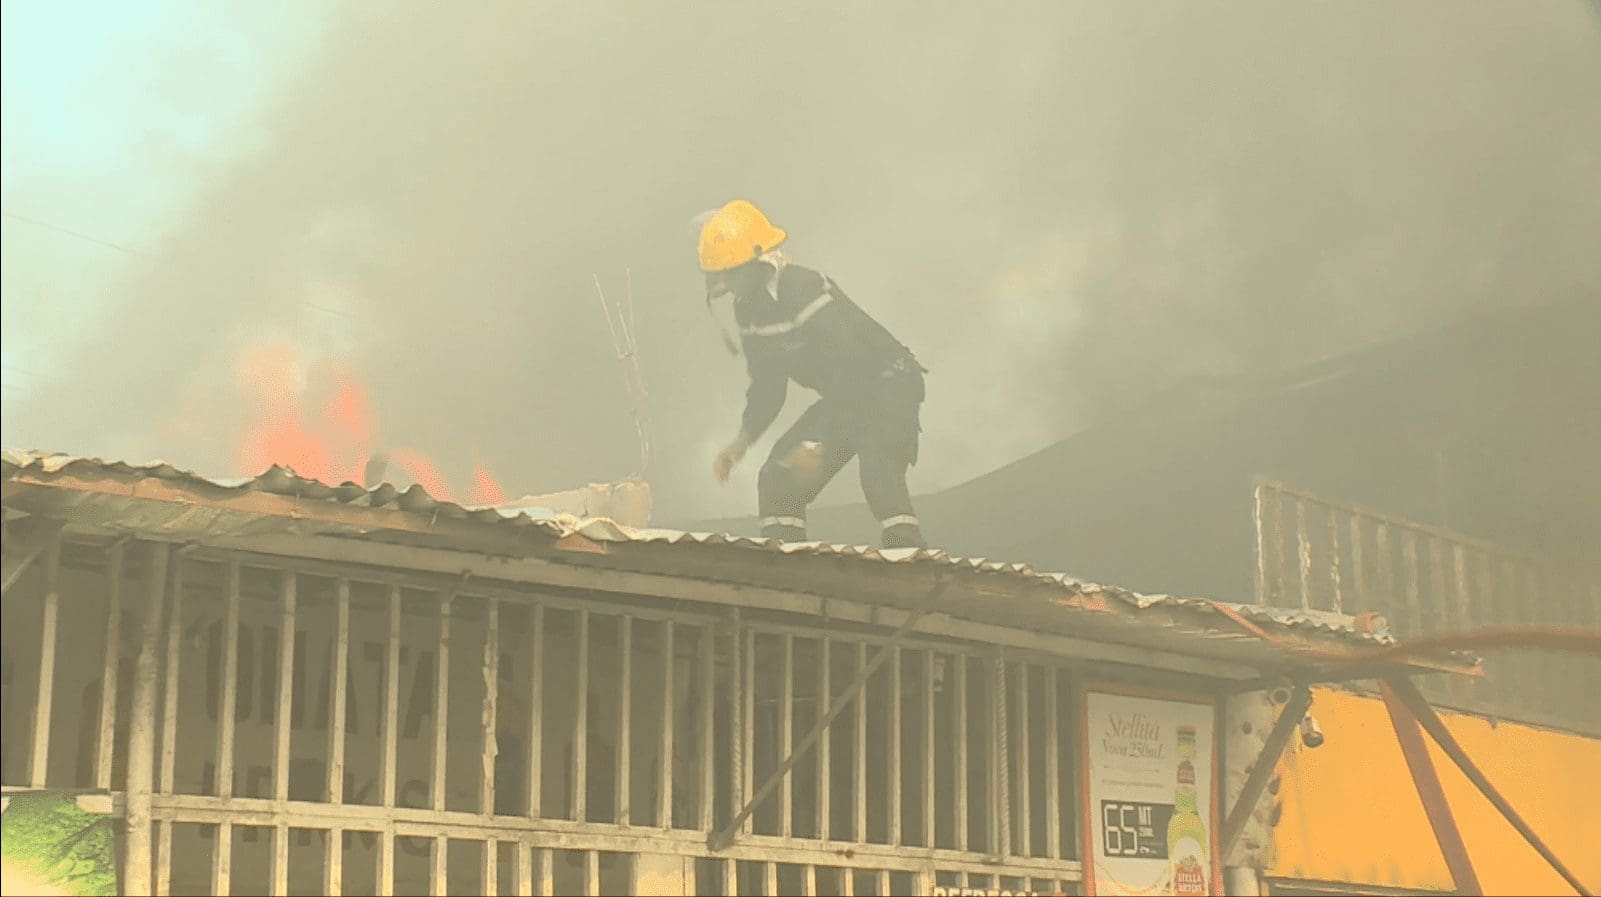 Serviço Nacional de Salvação Pública em alerta máximo devido aos incêndios em mercearias